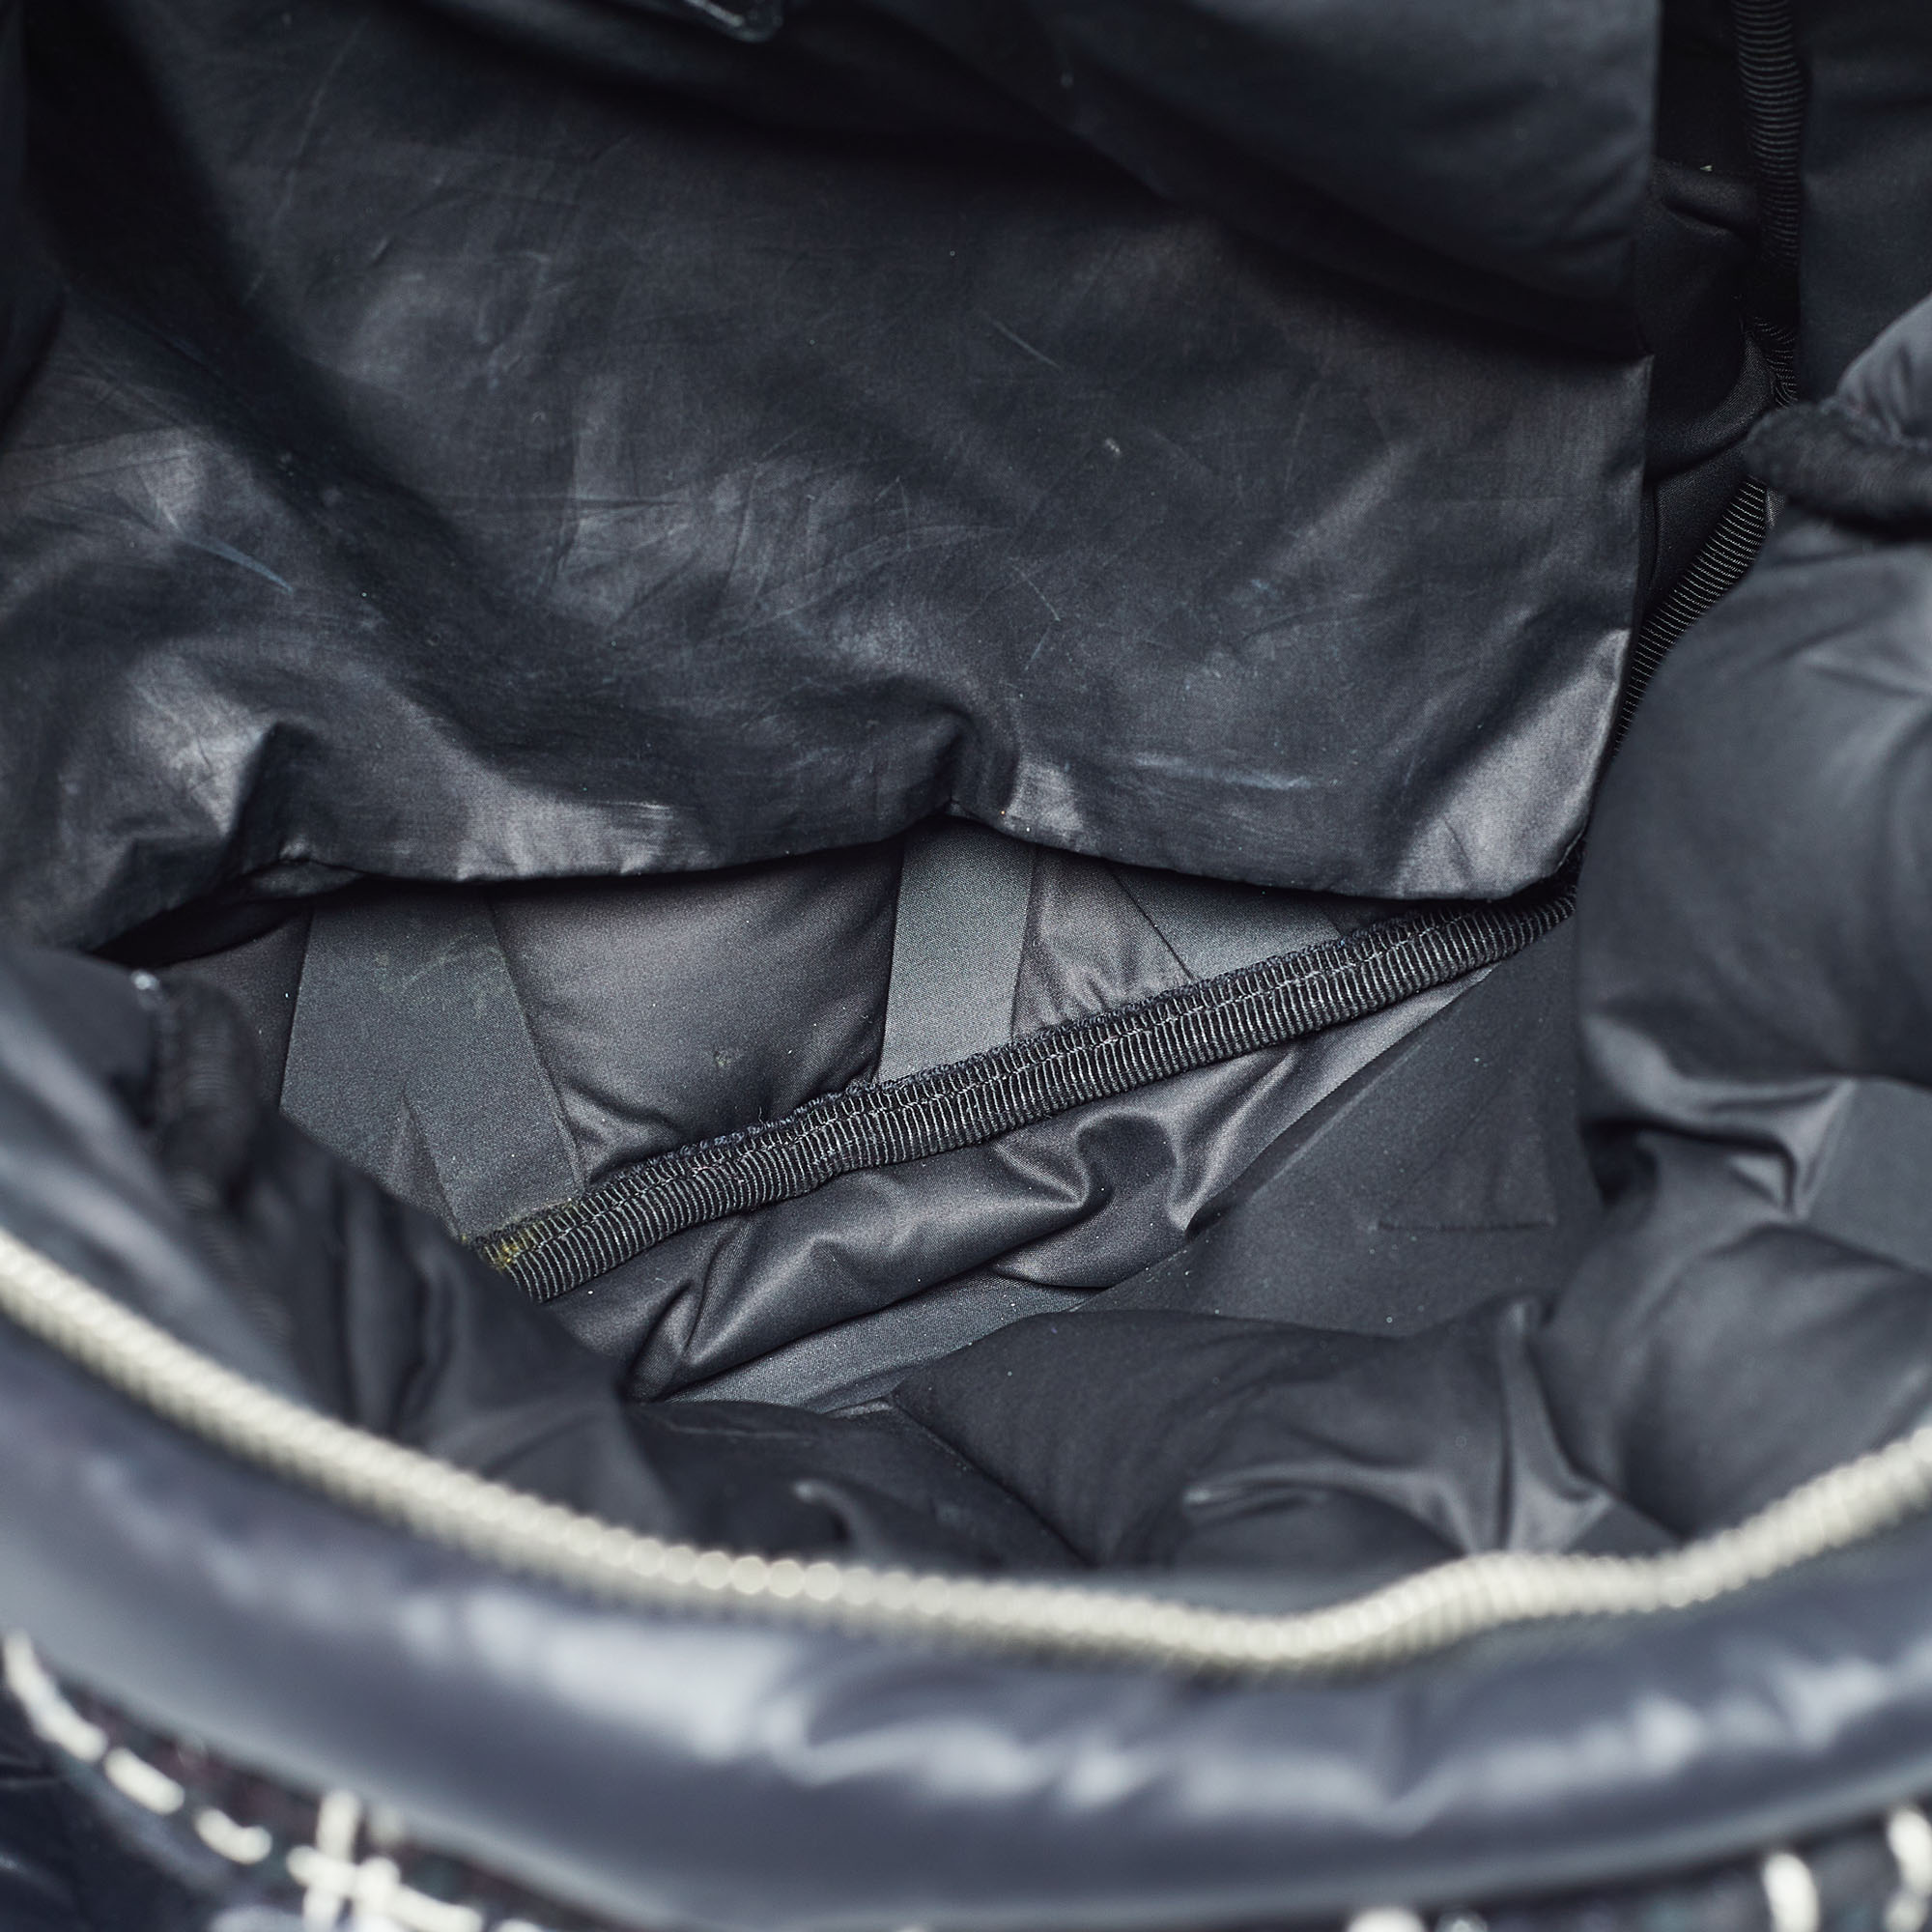 Chanel Black Nylon And Tweed Doudoune Backpack